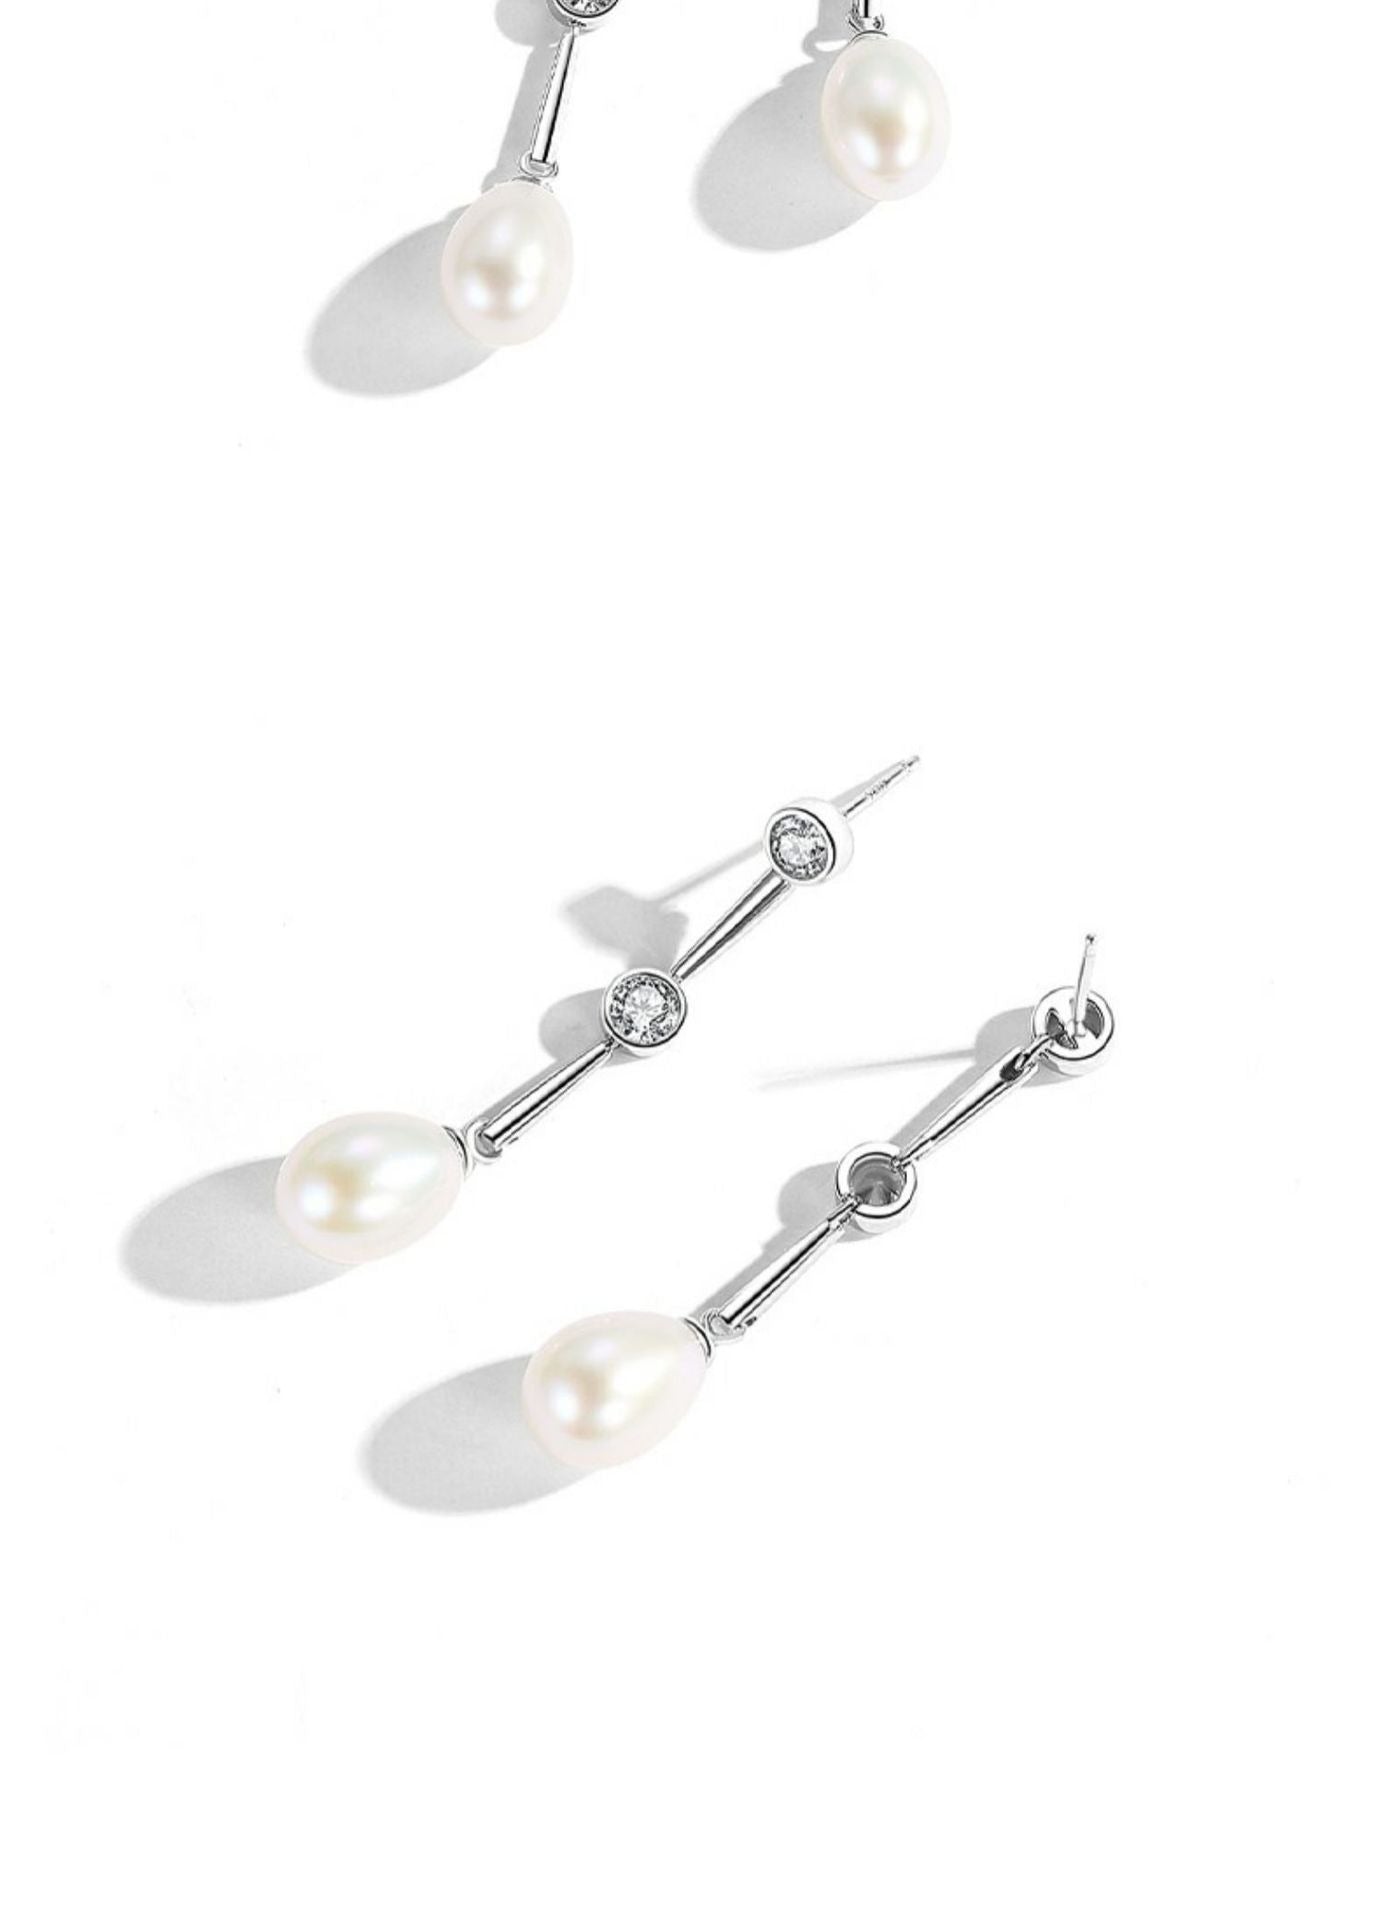 Dimond Drop Pearl Earrings